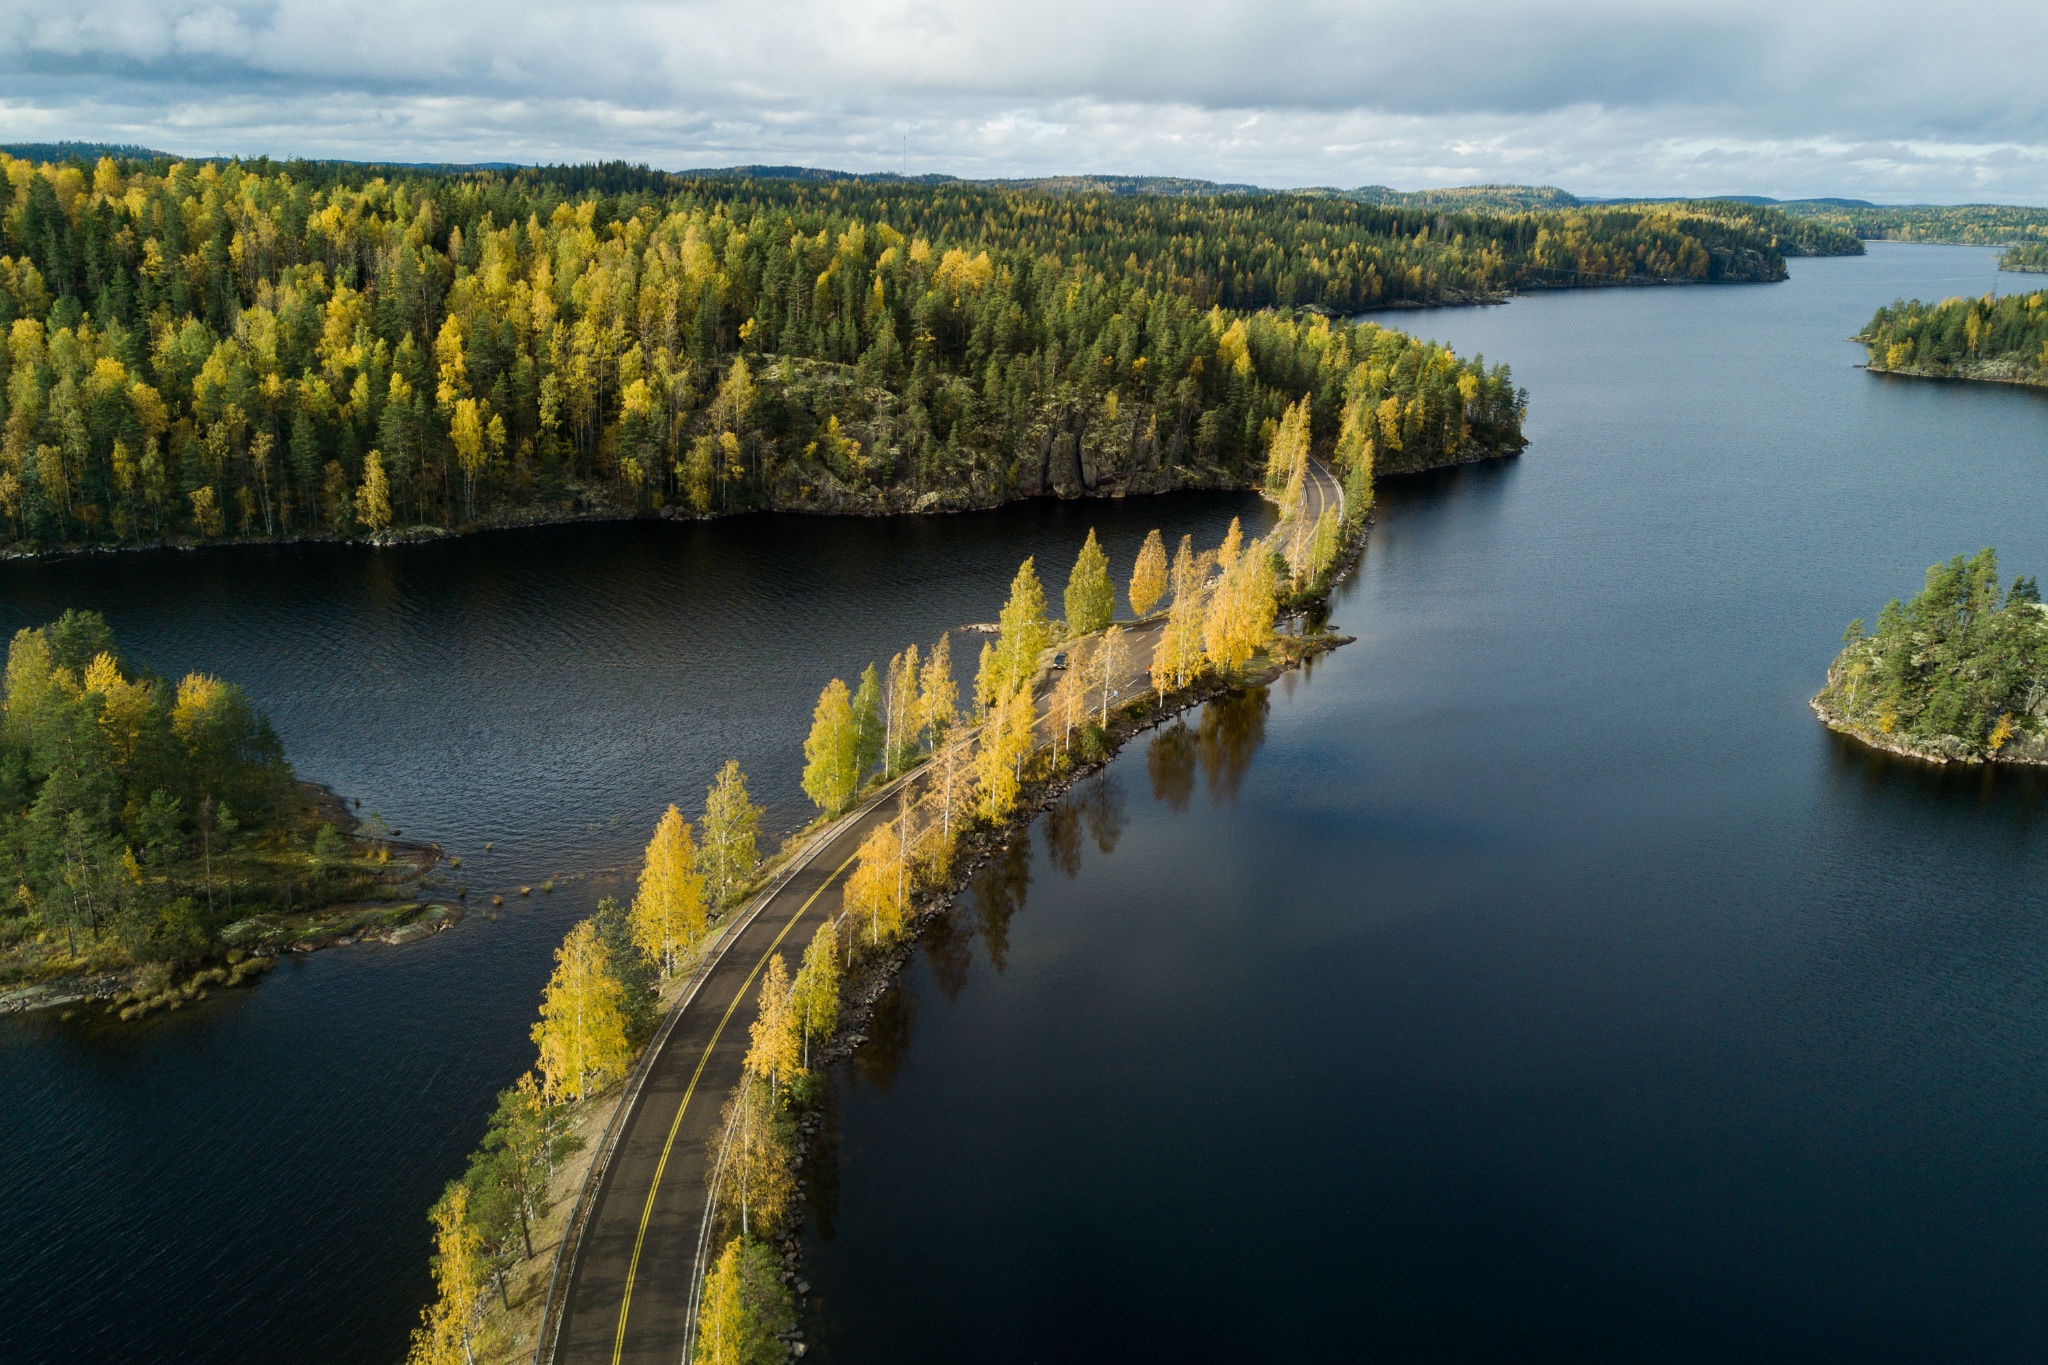 芬兰湖区深度游,带你走进小众纯美山林秘境!